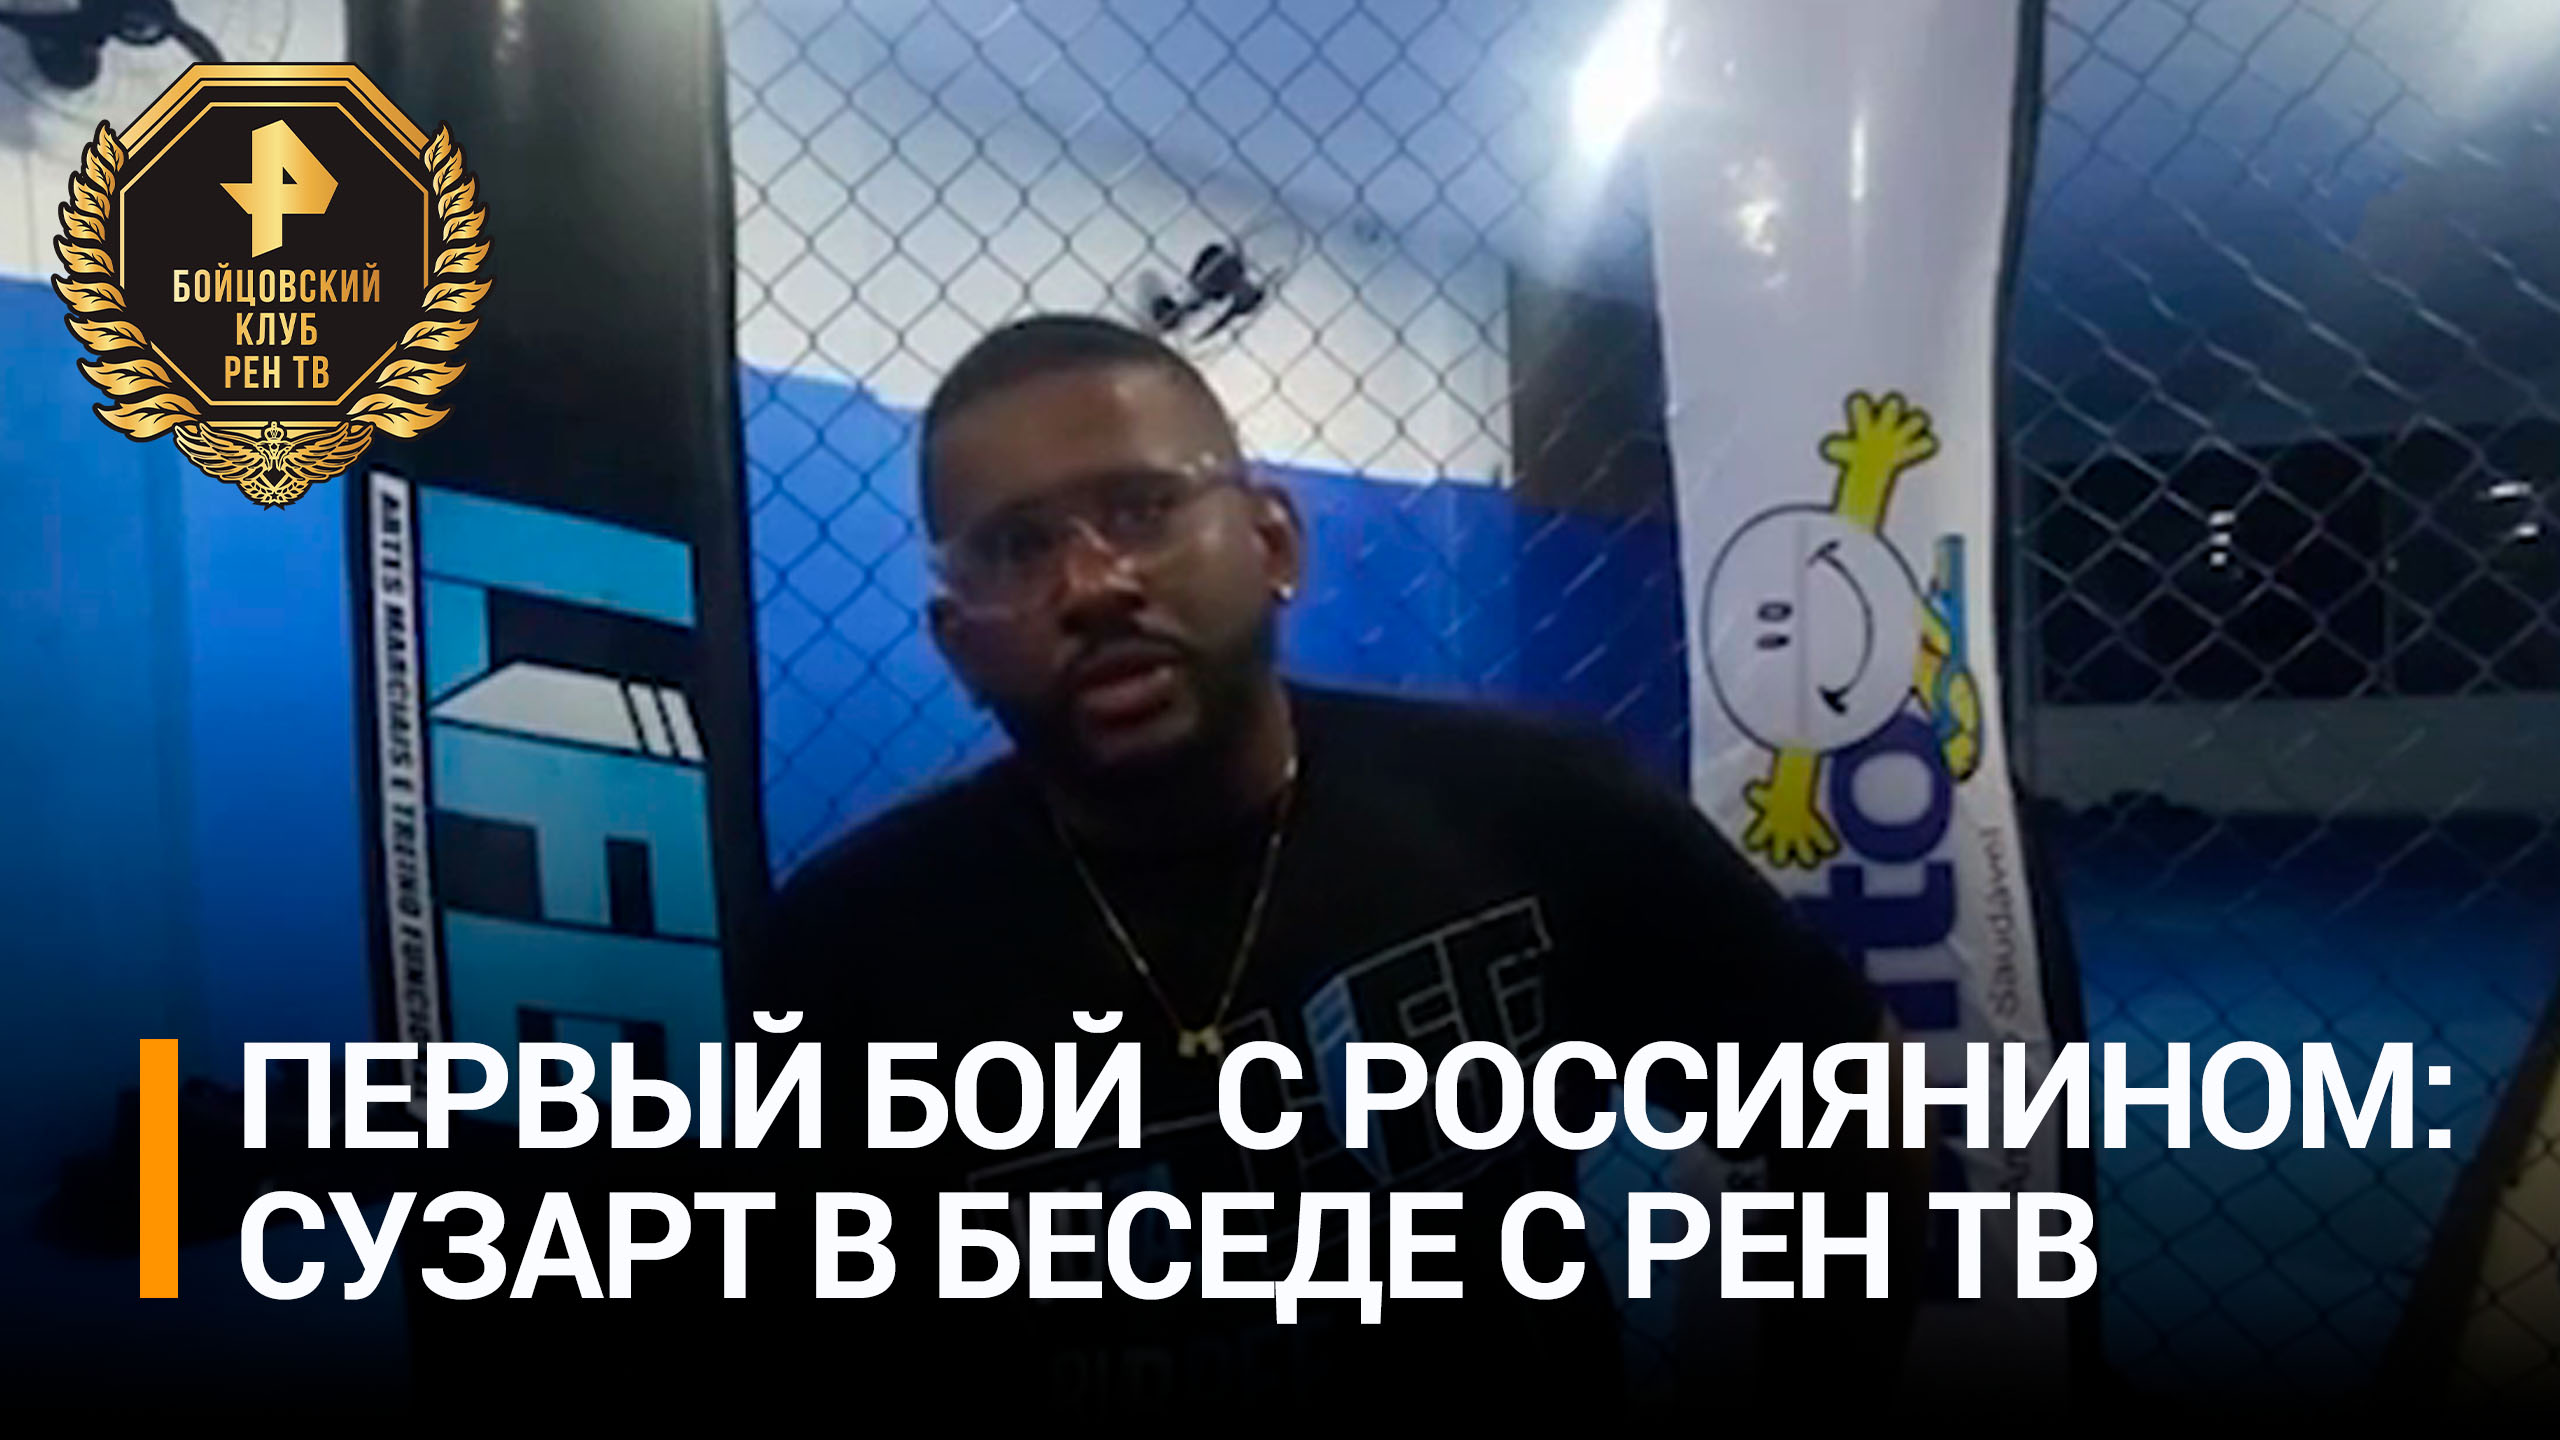 Бразилец Сузарт заявил, что рад выйти на ринг с бойцом из России / Бойцовский клуб РЕН